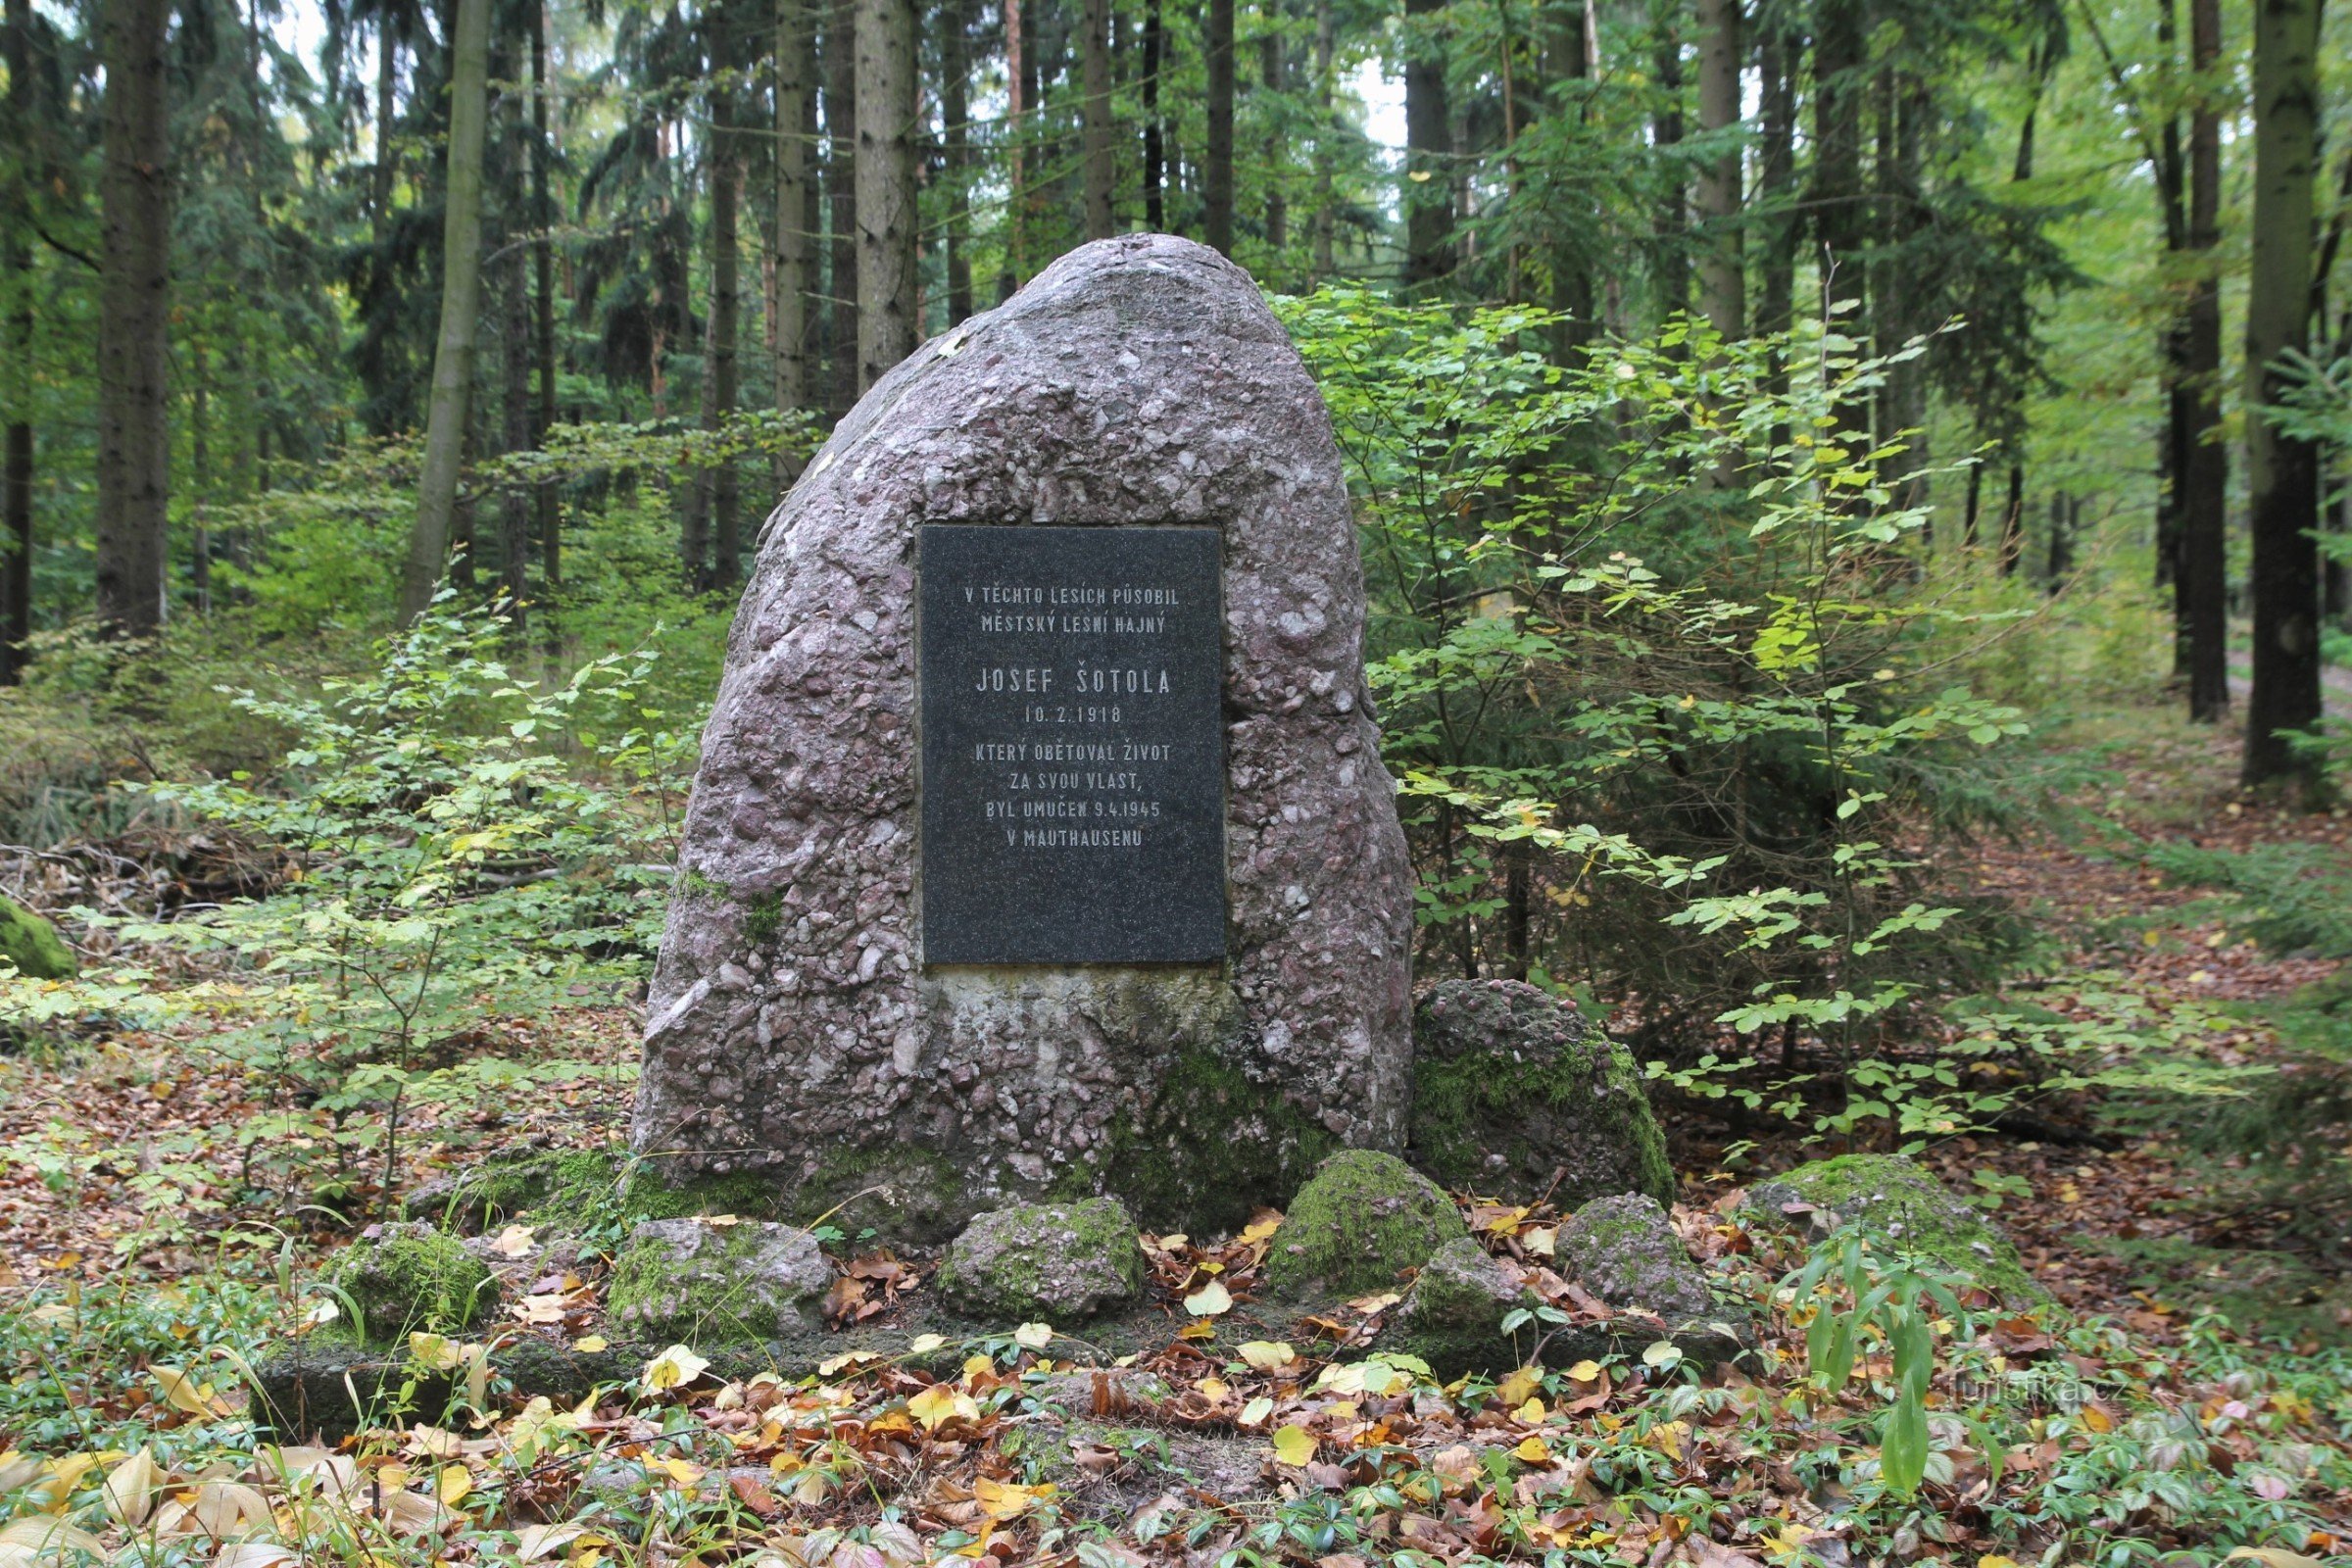 Đài tưởng niệm Josef Šotola nằm trên một khu rừng nhỏ